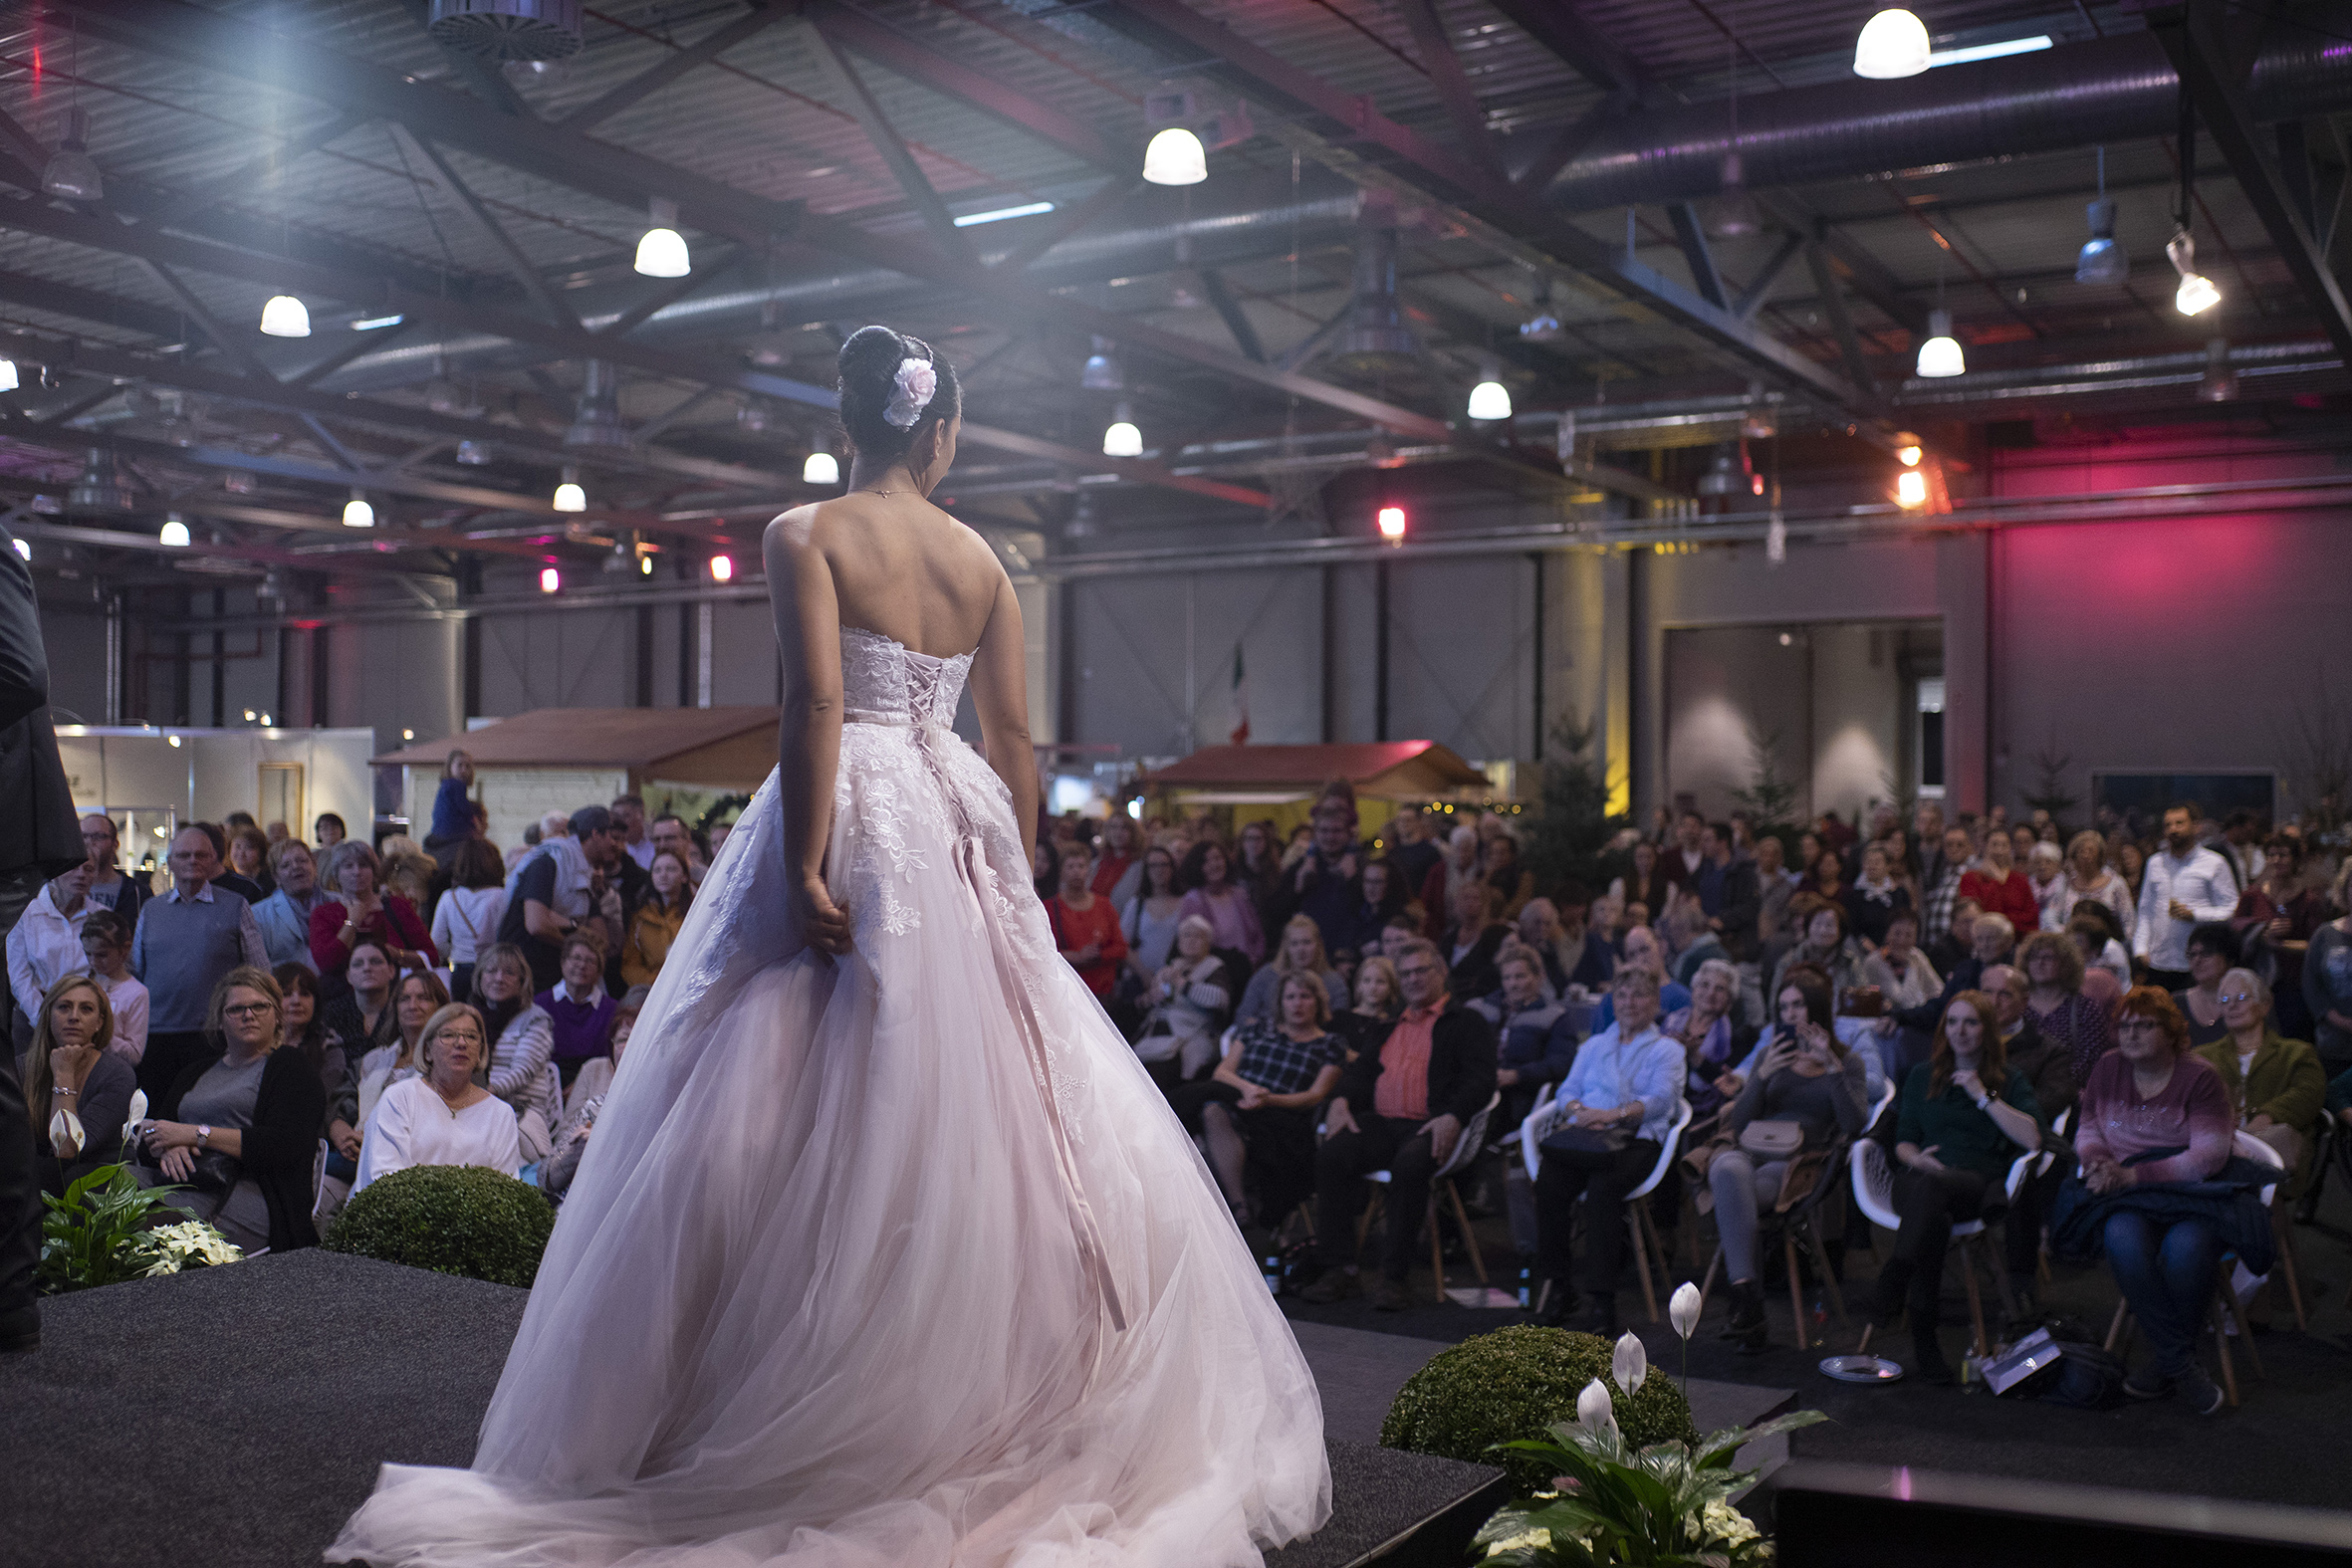 Großes Interesse an der Brautmodenschau auf der Hochzeitsmesse „Sag ja!“ im Rahmen der KOSTBAR. (Foto: Sebastian Görner)